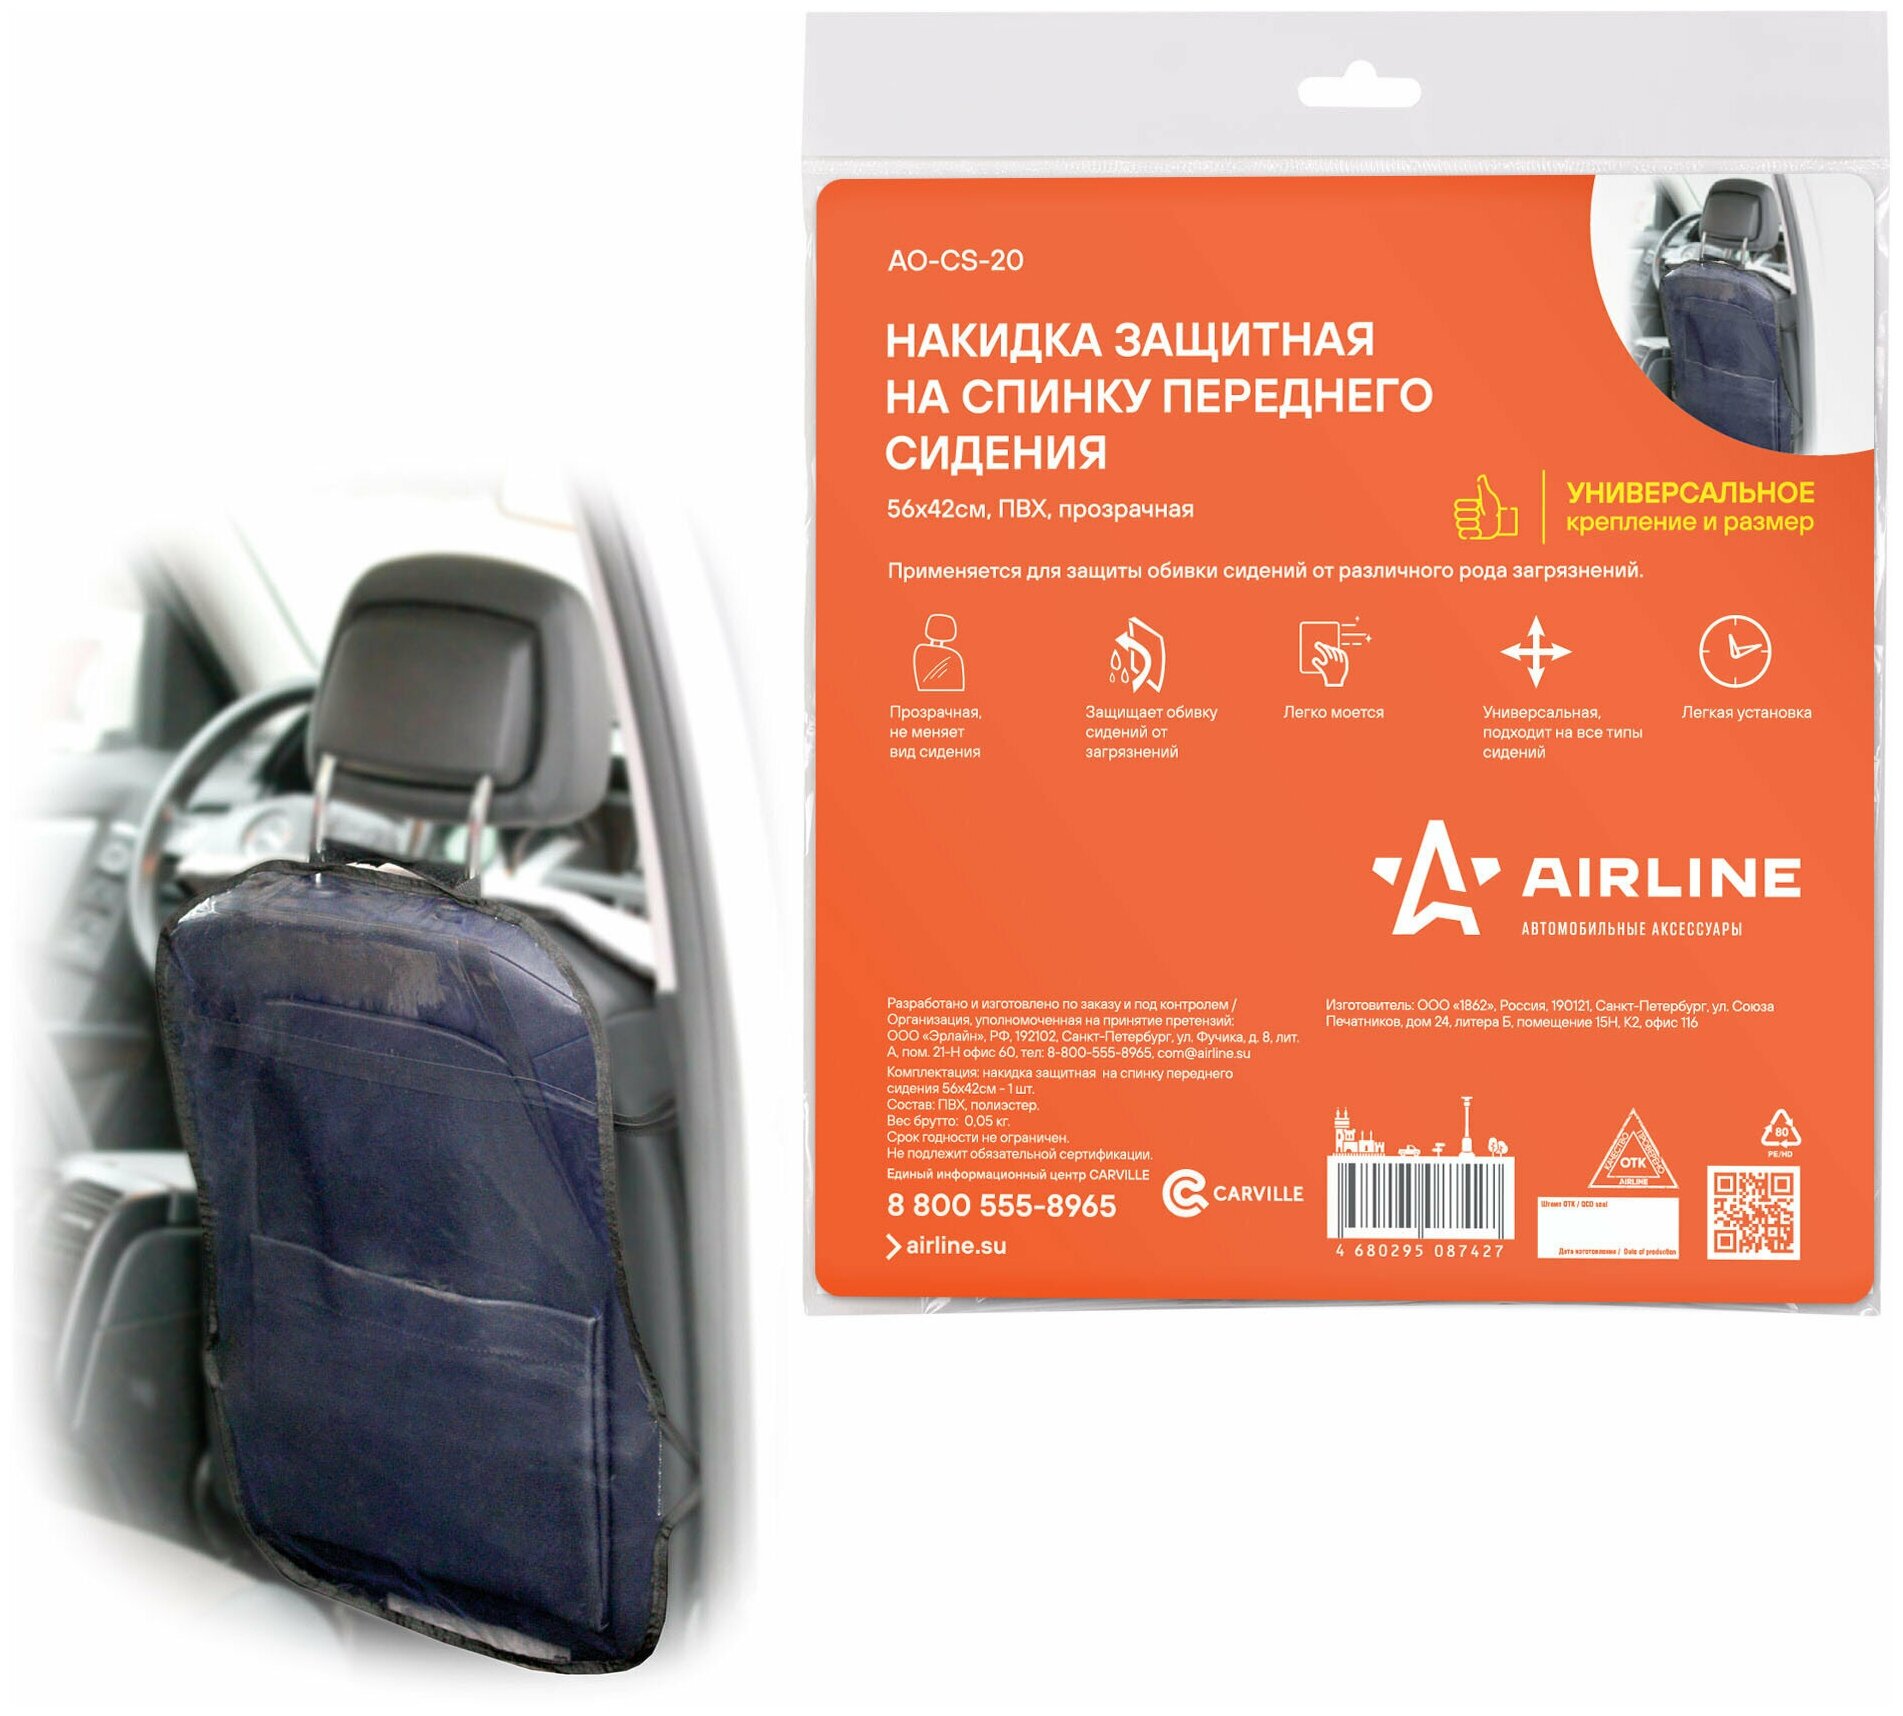 Накидка защитная на спинку переднего сидения Airline (56*42 см), прозрачная (AO-CS-20) - фотография № 1